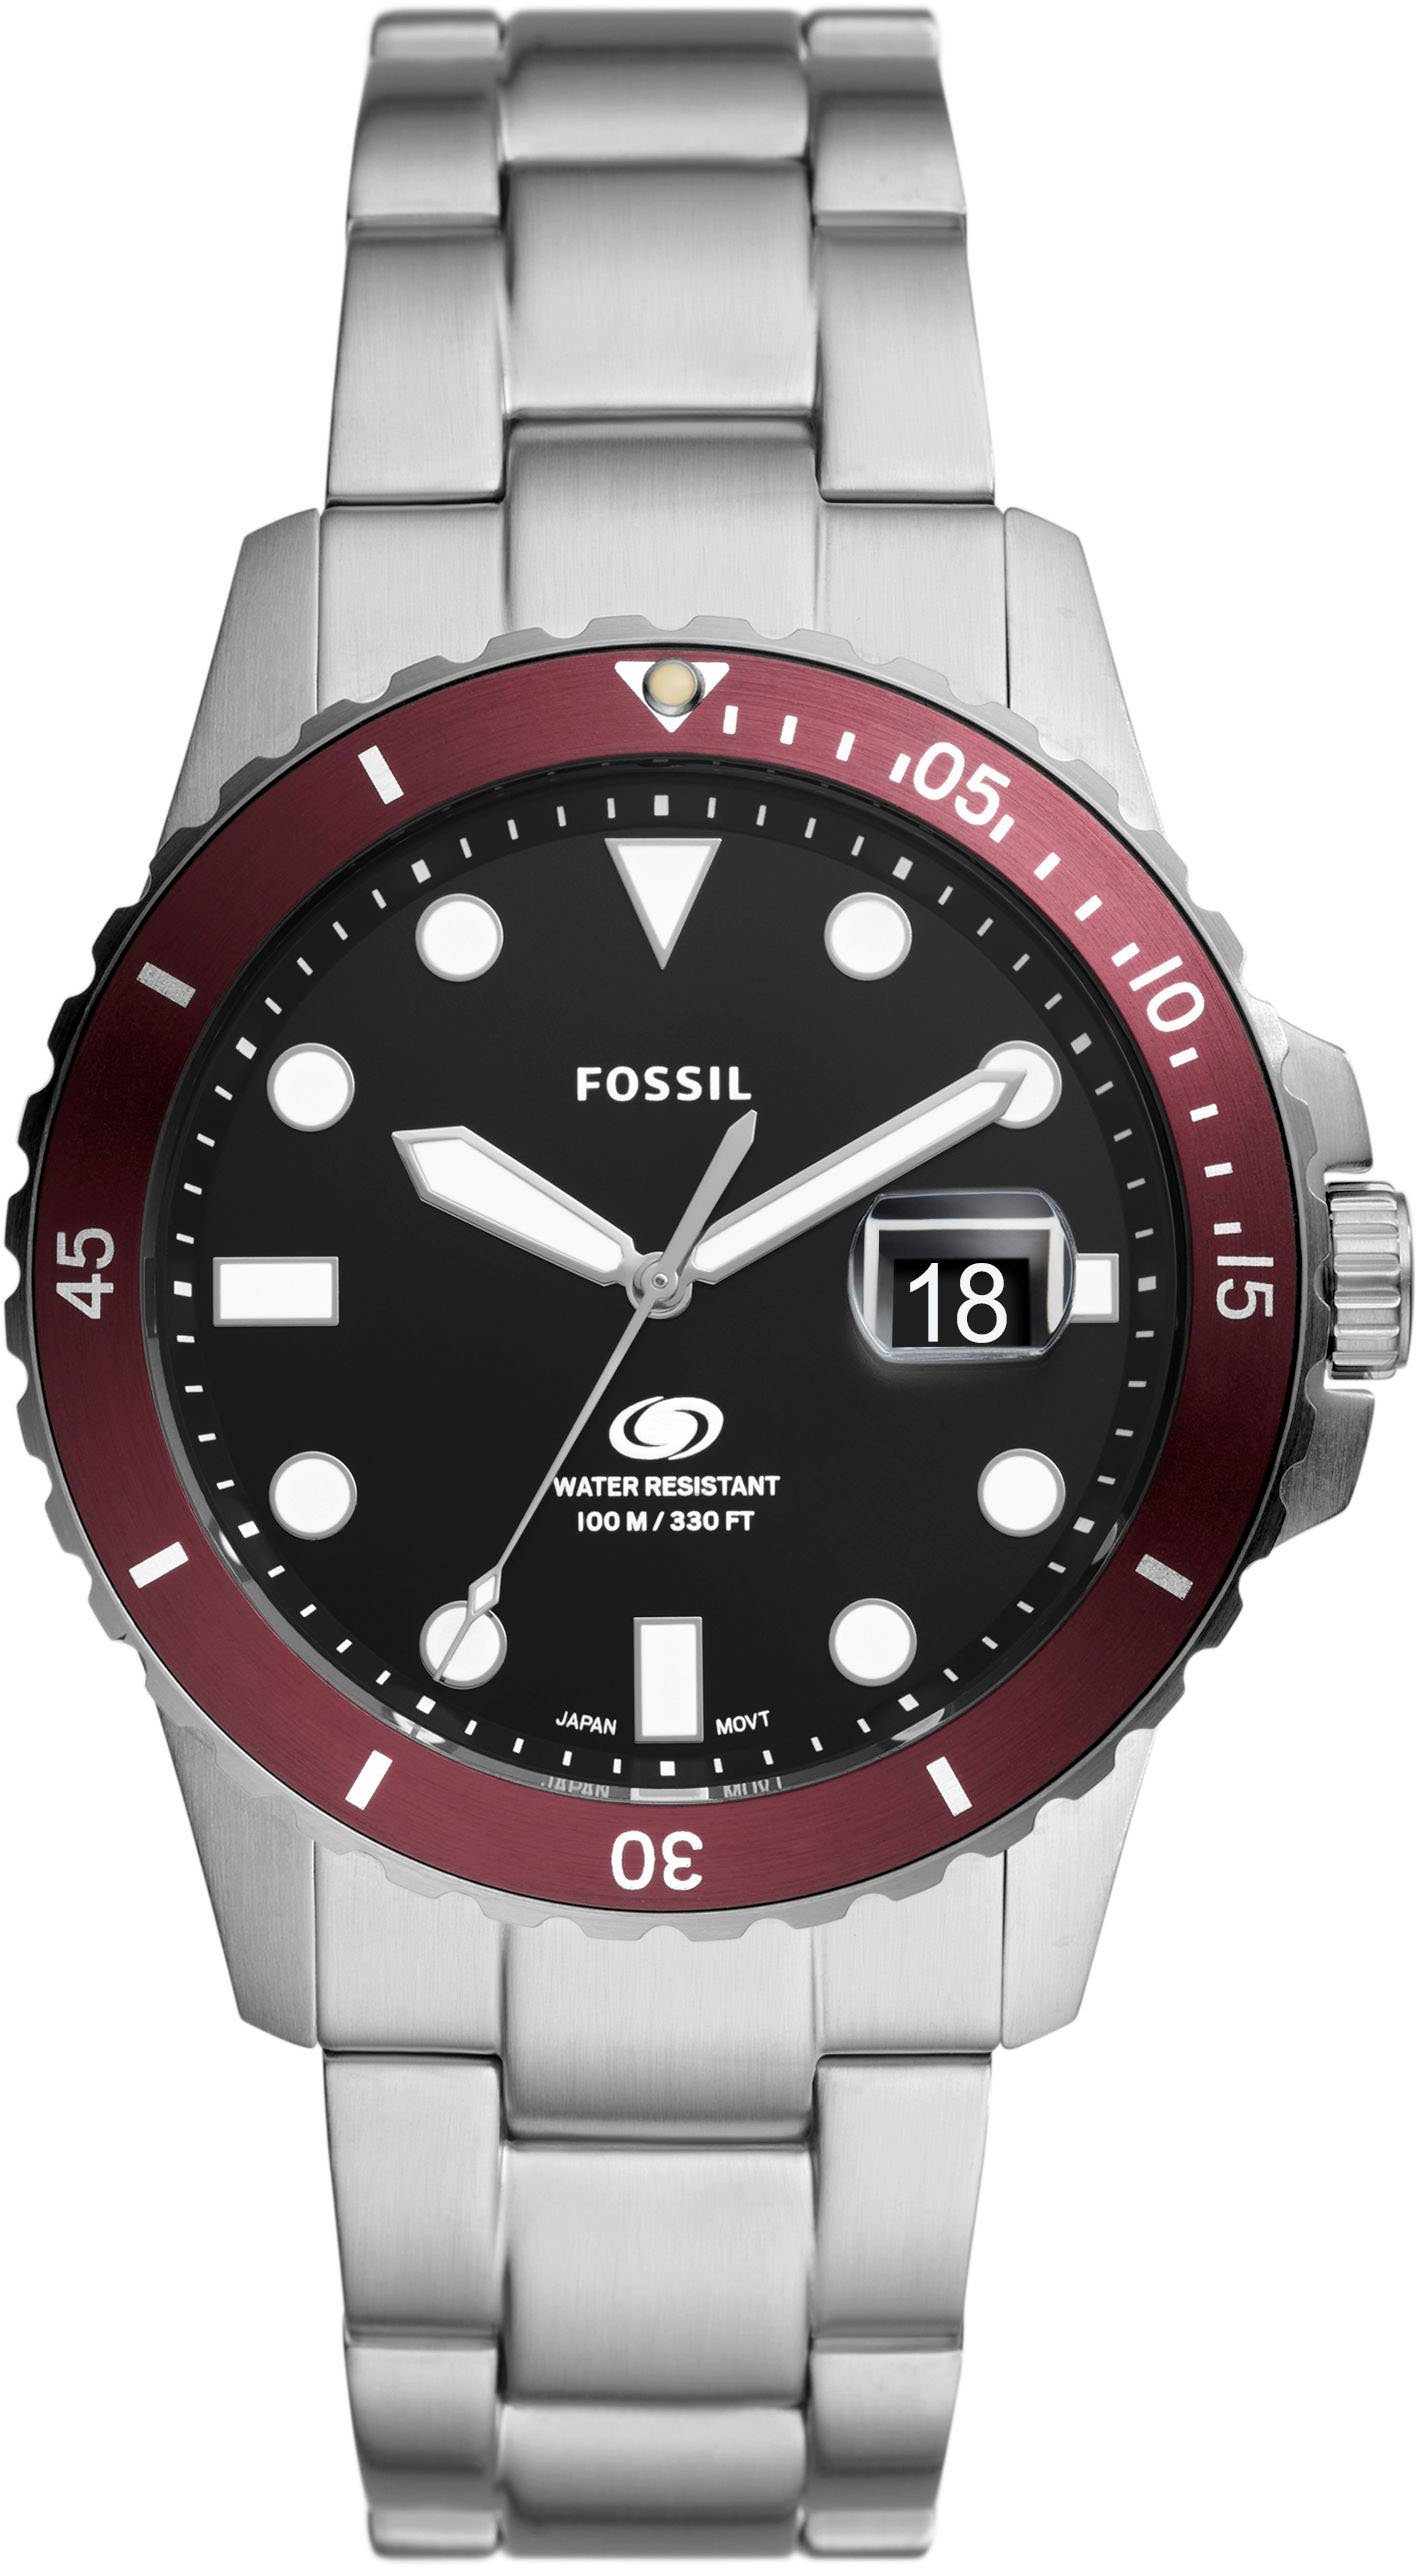 Fossil Quarzuhr FOSSIL BLUE DIVE, FS6013, Armbanduhr, Herrenuhr, Datum, analog